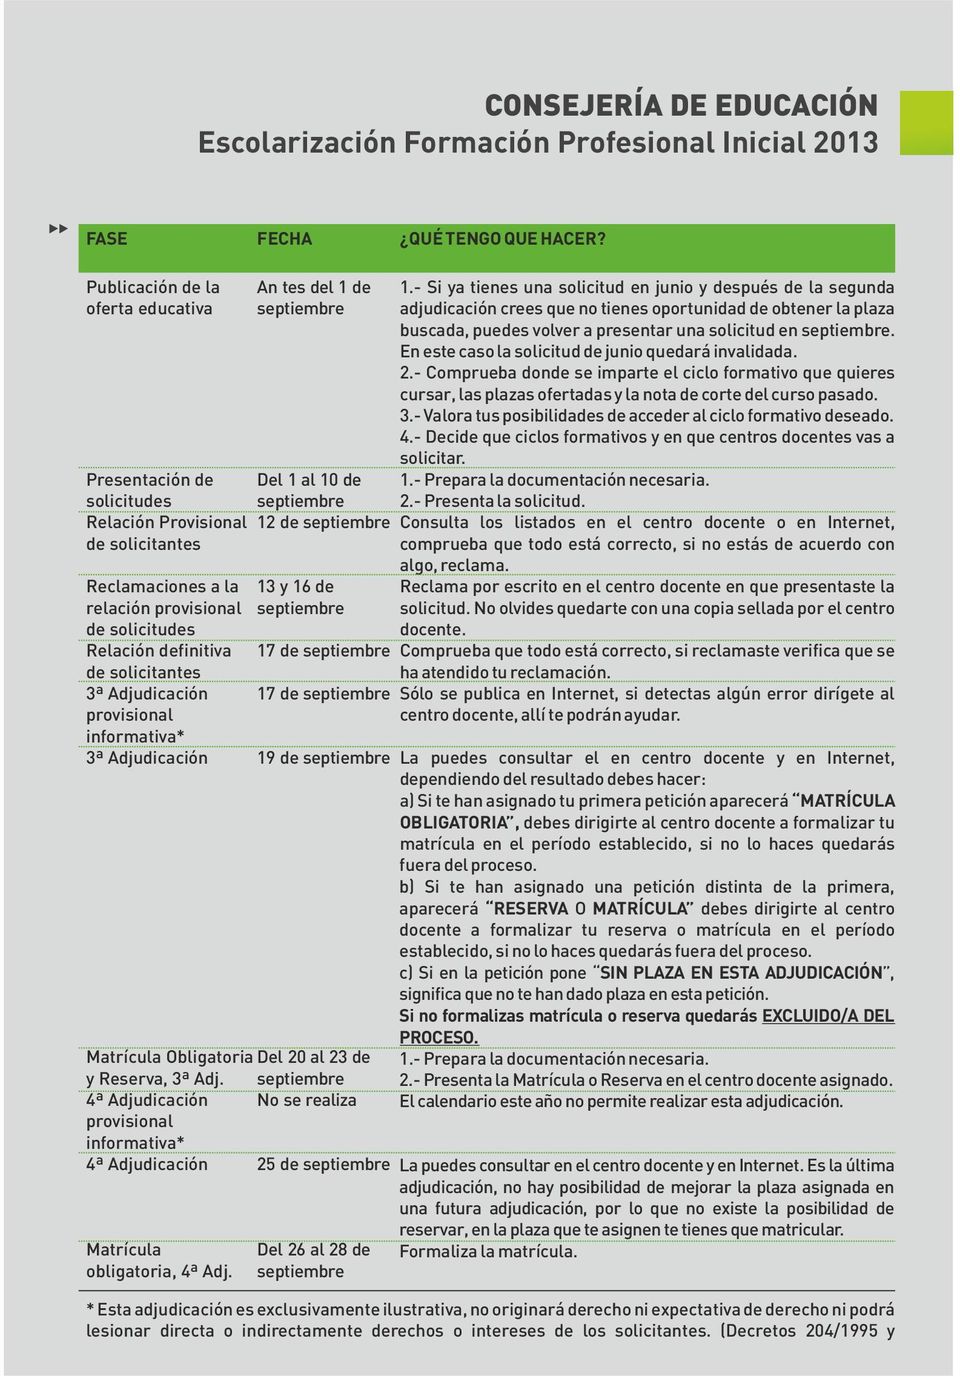 djudicación provisional informativa* 3ª djudicación Matrícula Obligatoria Del 20 al 23 de y Reserva, 3ª dj.